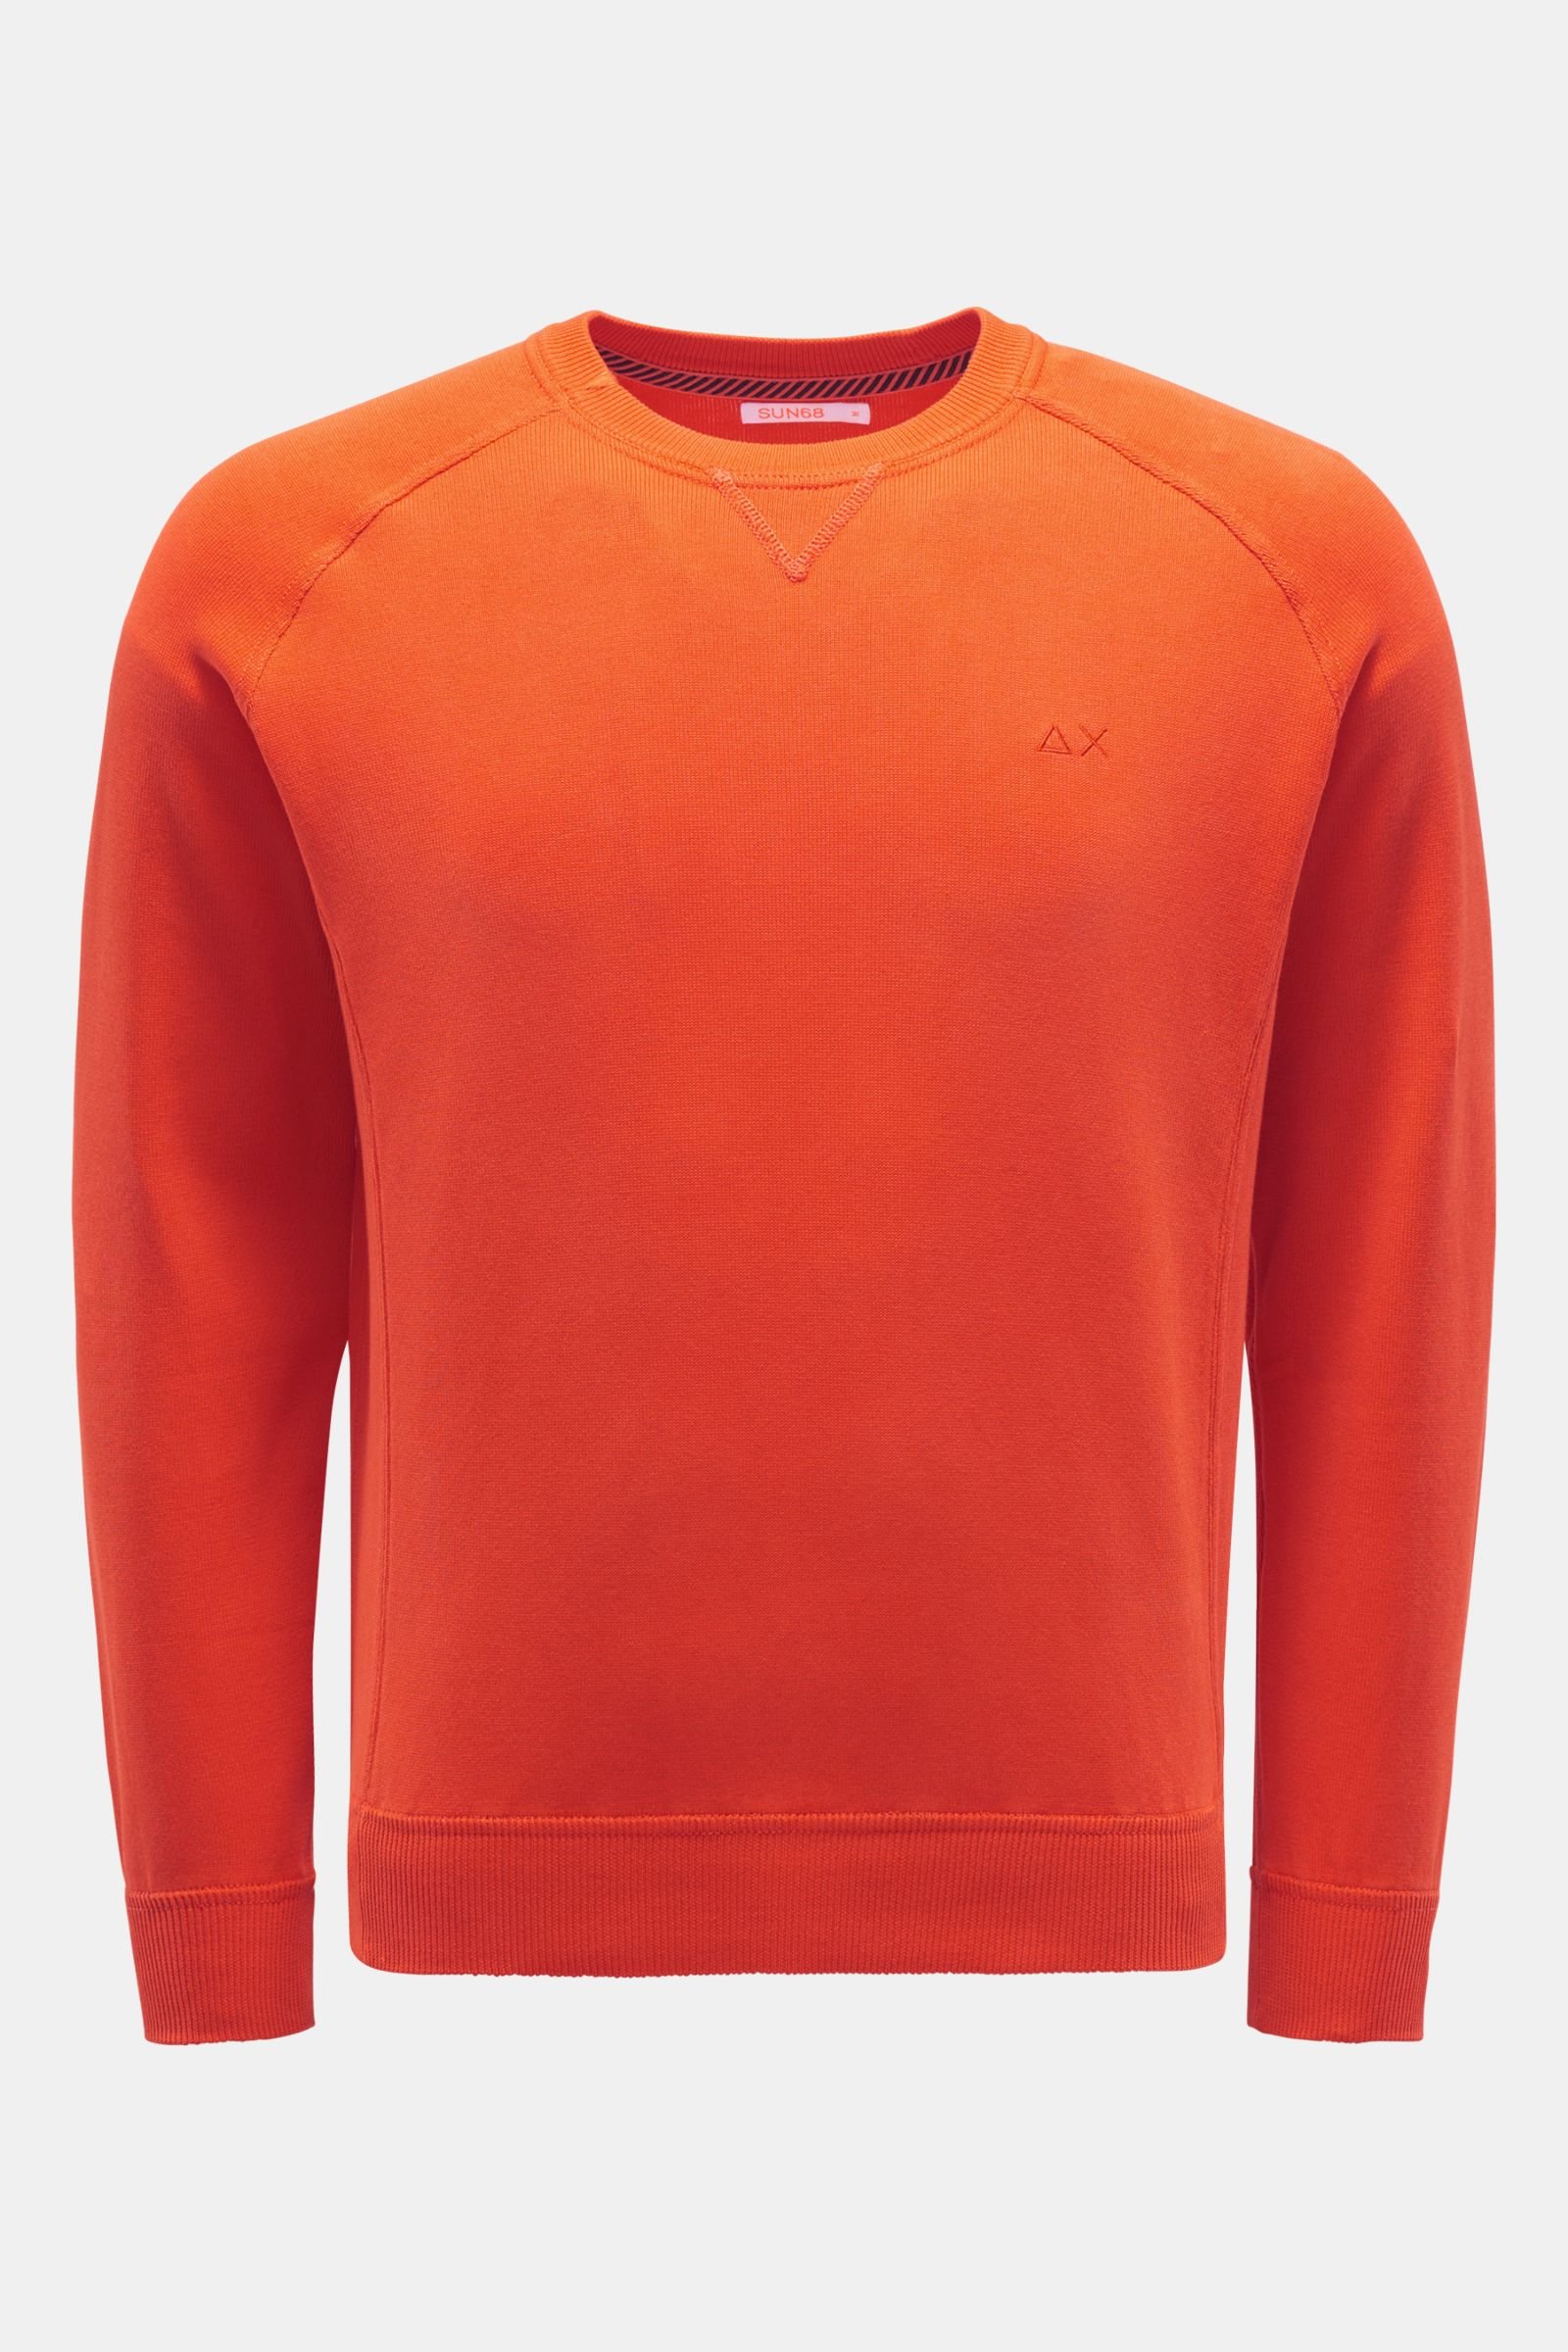 Rundhals-Sweatshirt orange